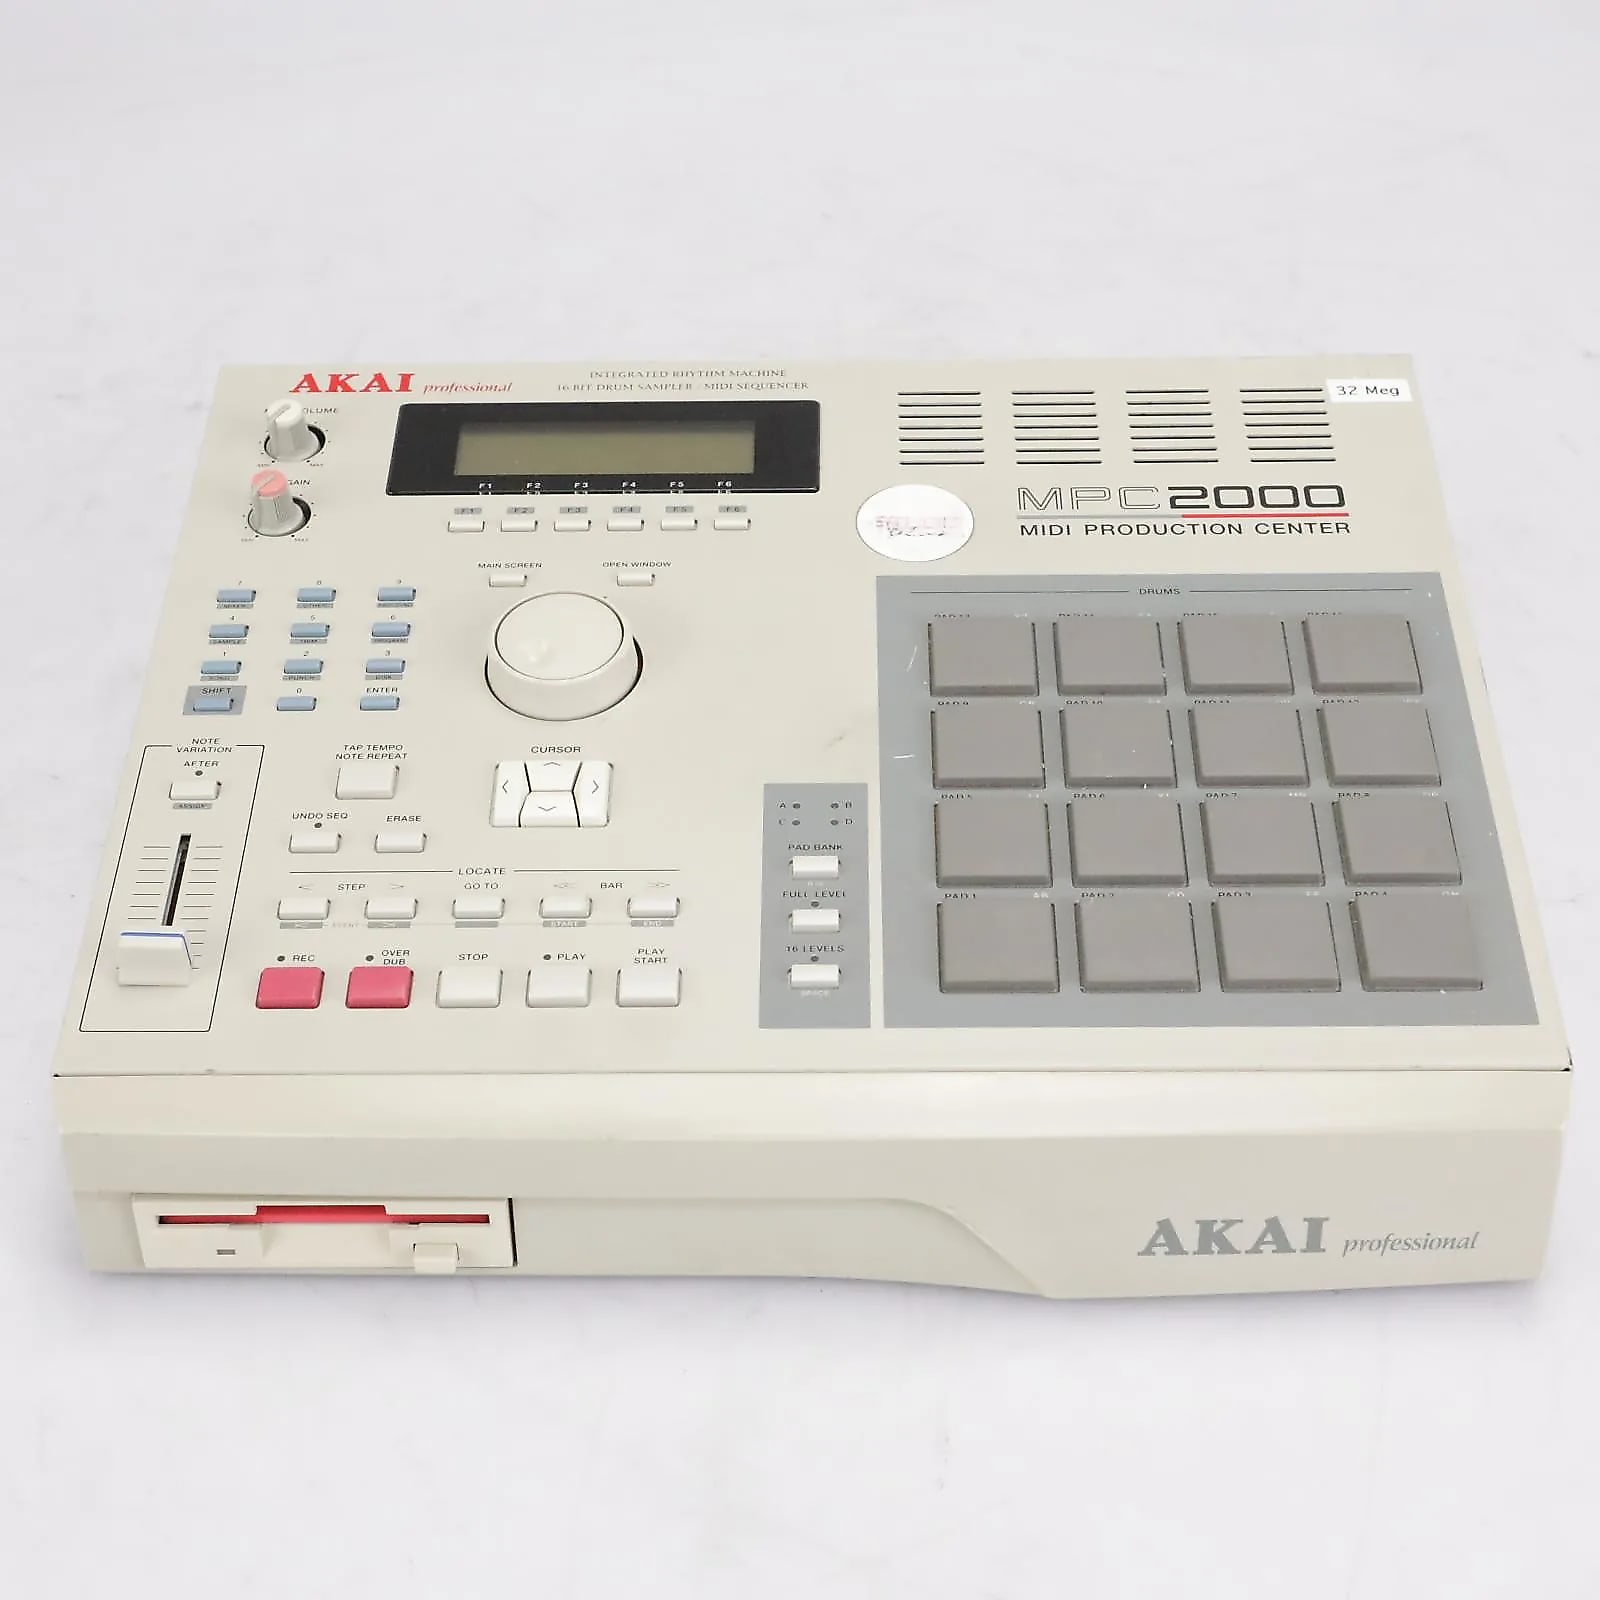 Akai MPC2000 MIDI Production Center | Reverb Canada